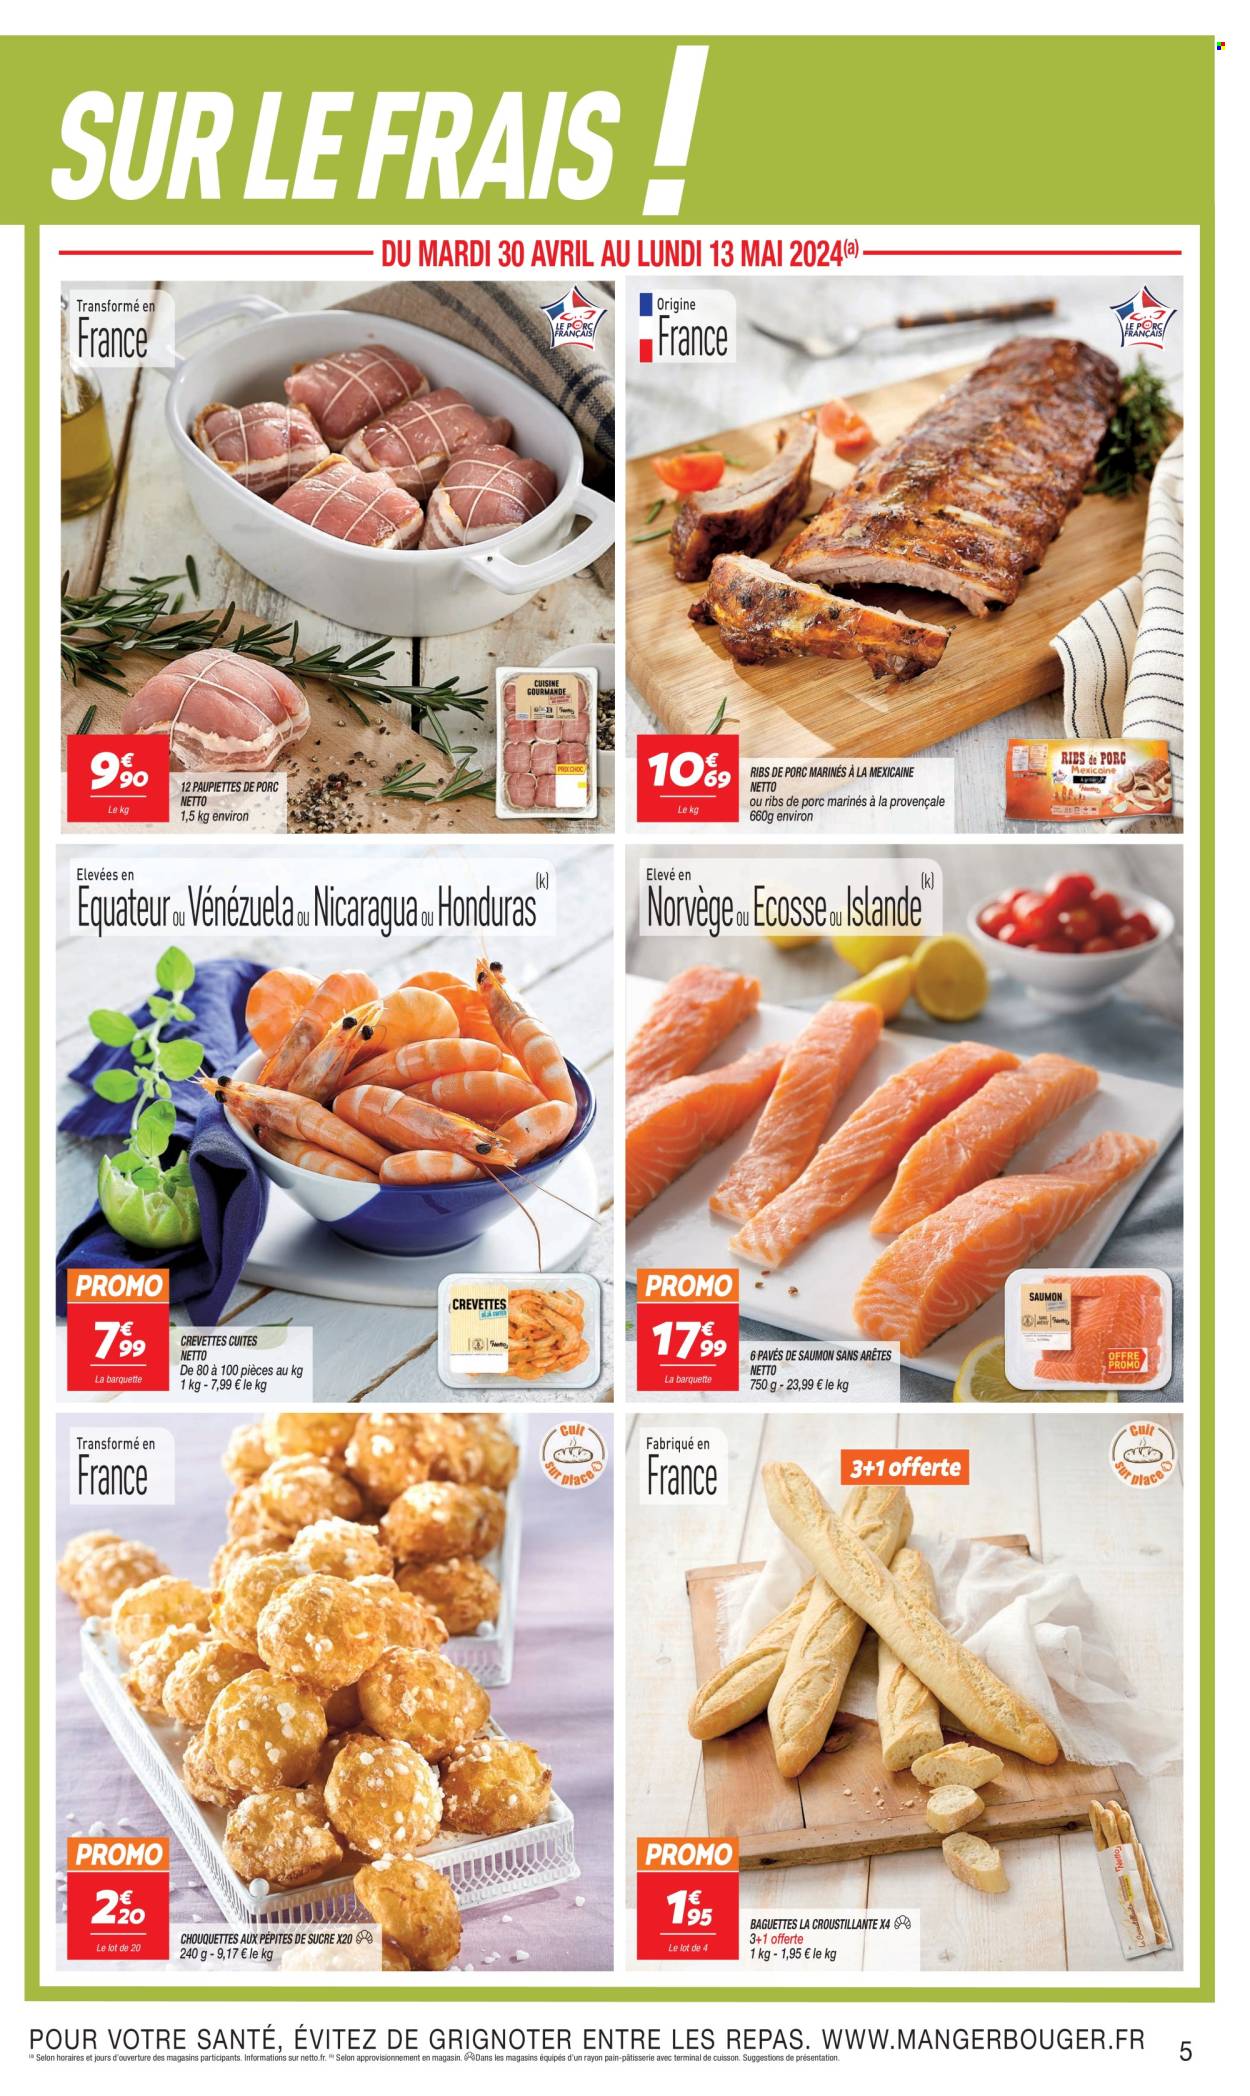 thumbnail - Catalogue Netto - 30/04/2024 - 13/05/2024 - Produits soldés - côtes de porc, viande de porc, paupiette, baguette, pâtisserie salée, chouquettes, saumon, crevettes, pavés de saumon, fleur. Page 5.